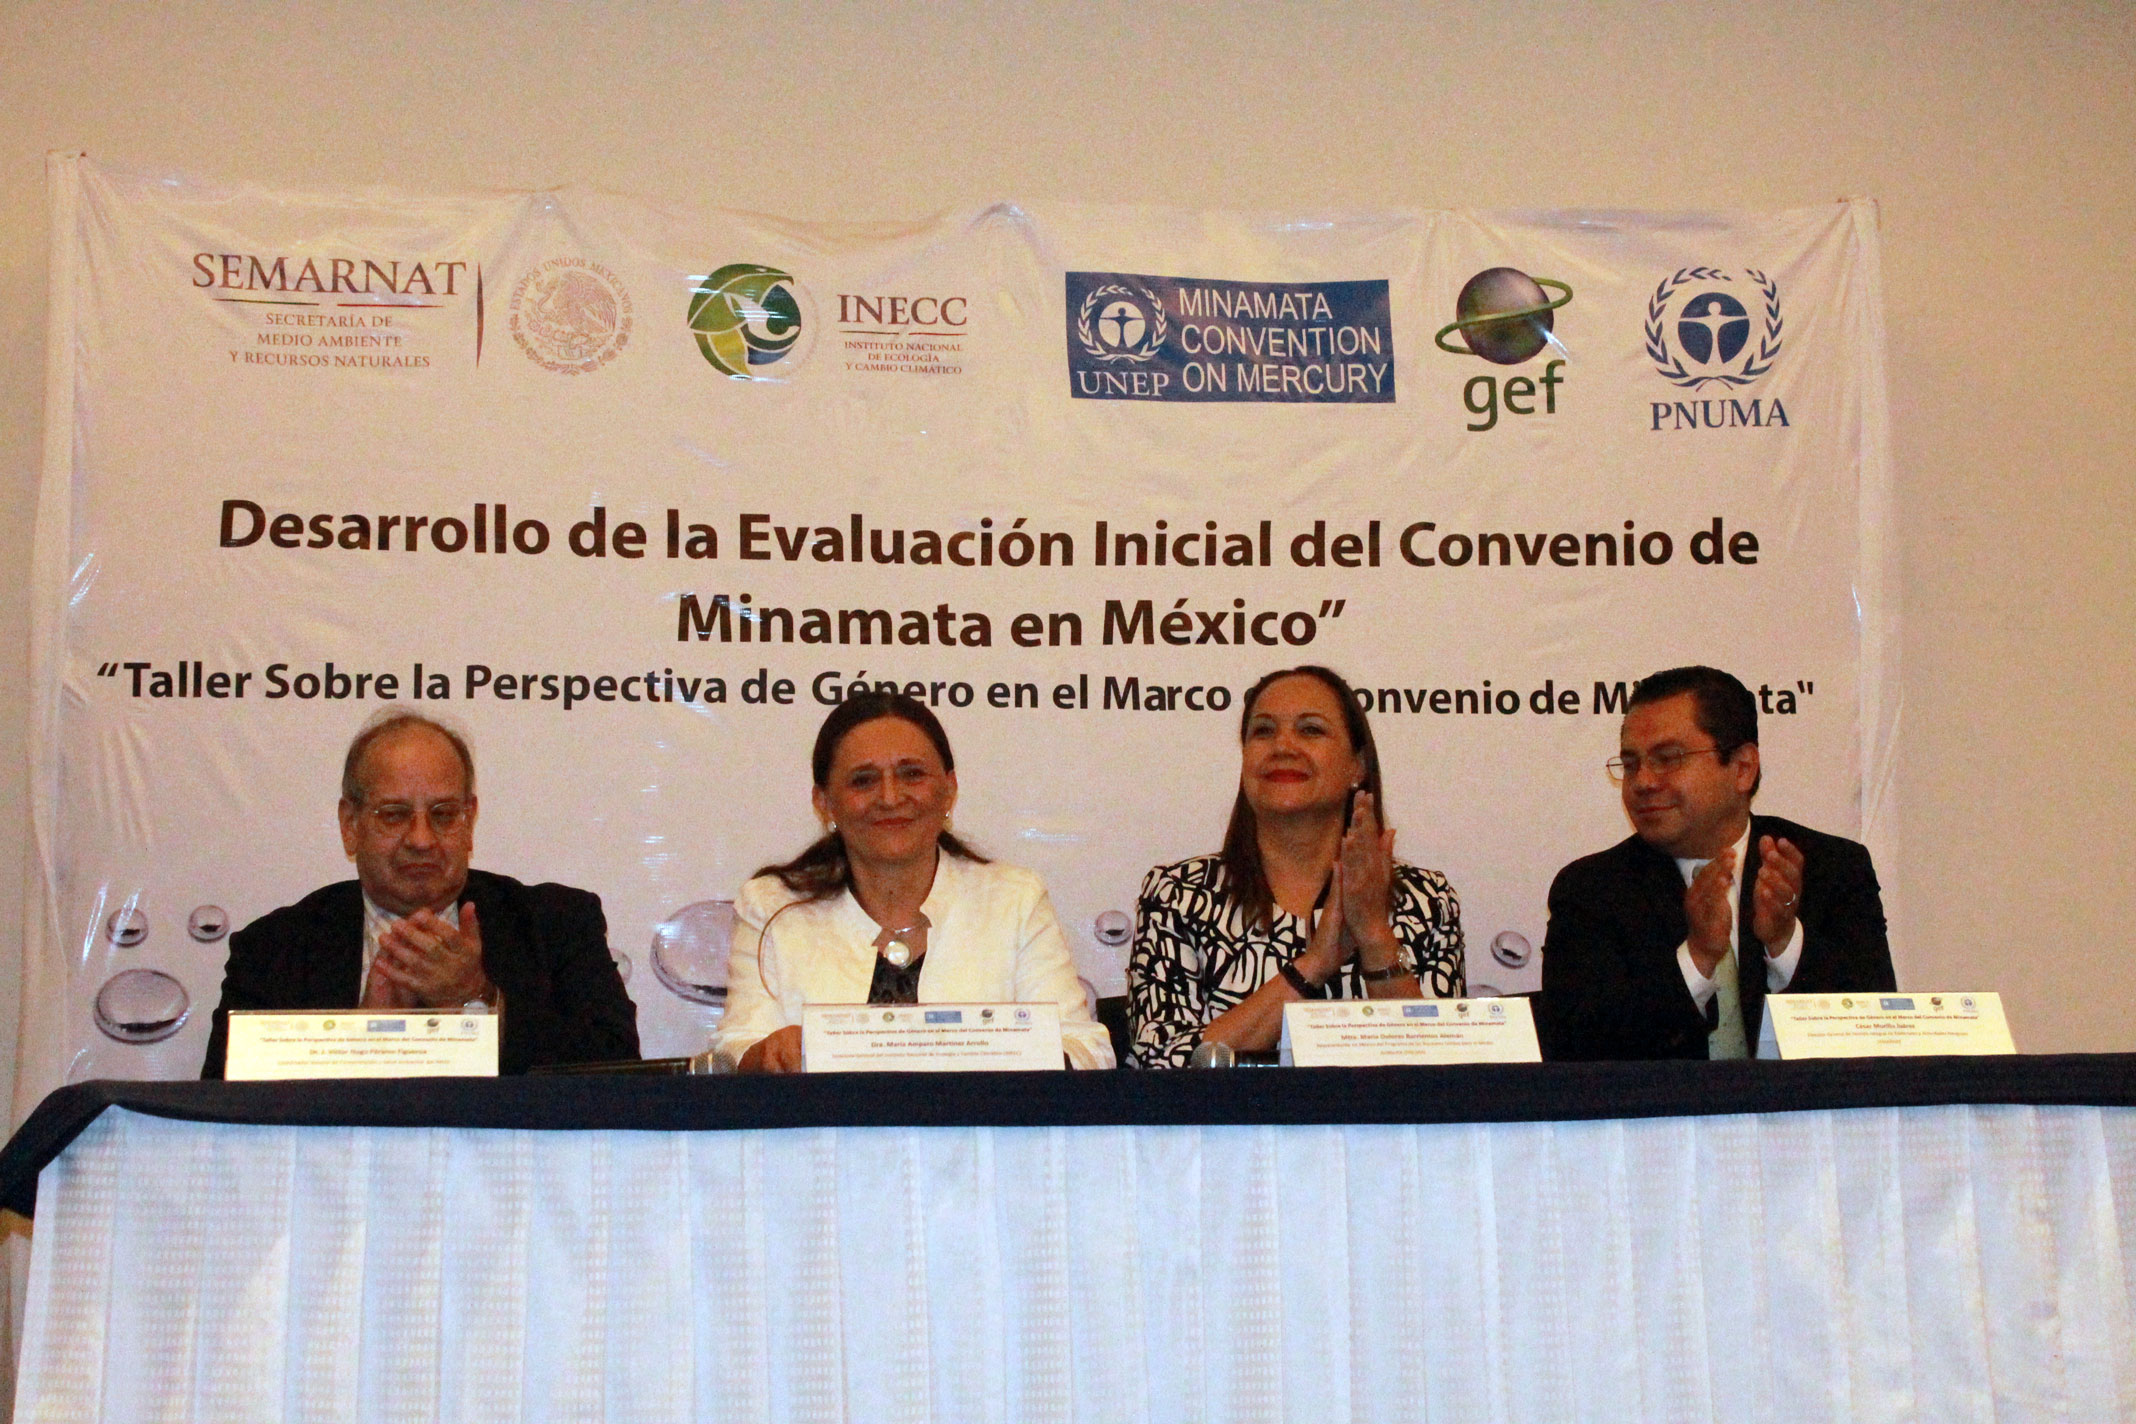 Dra. Amparo Martínez - INECC, Dr. Víctor Hugo Páramo - INECC, Mtra. Dolores Barrientos - UNEP